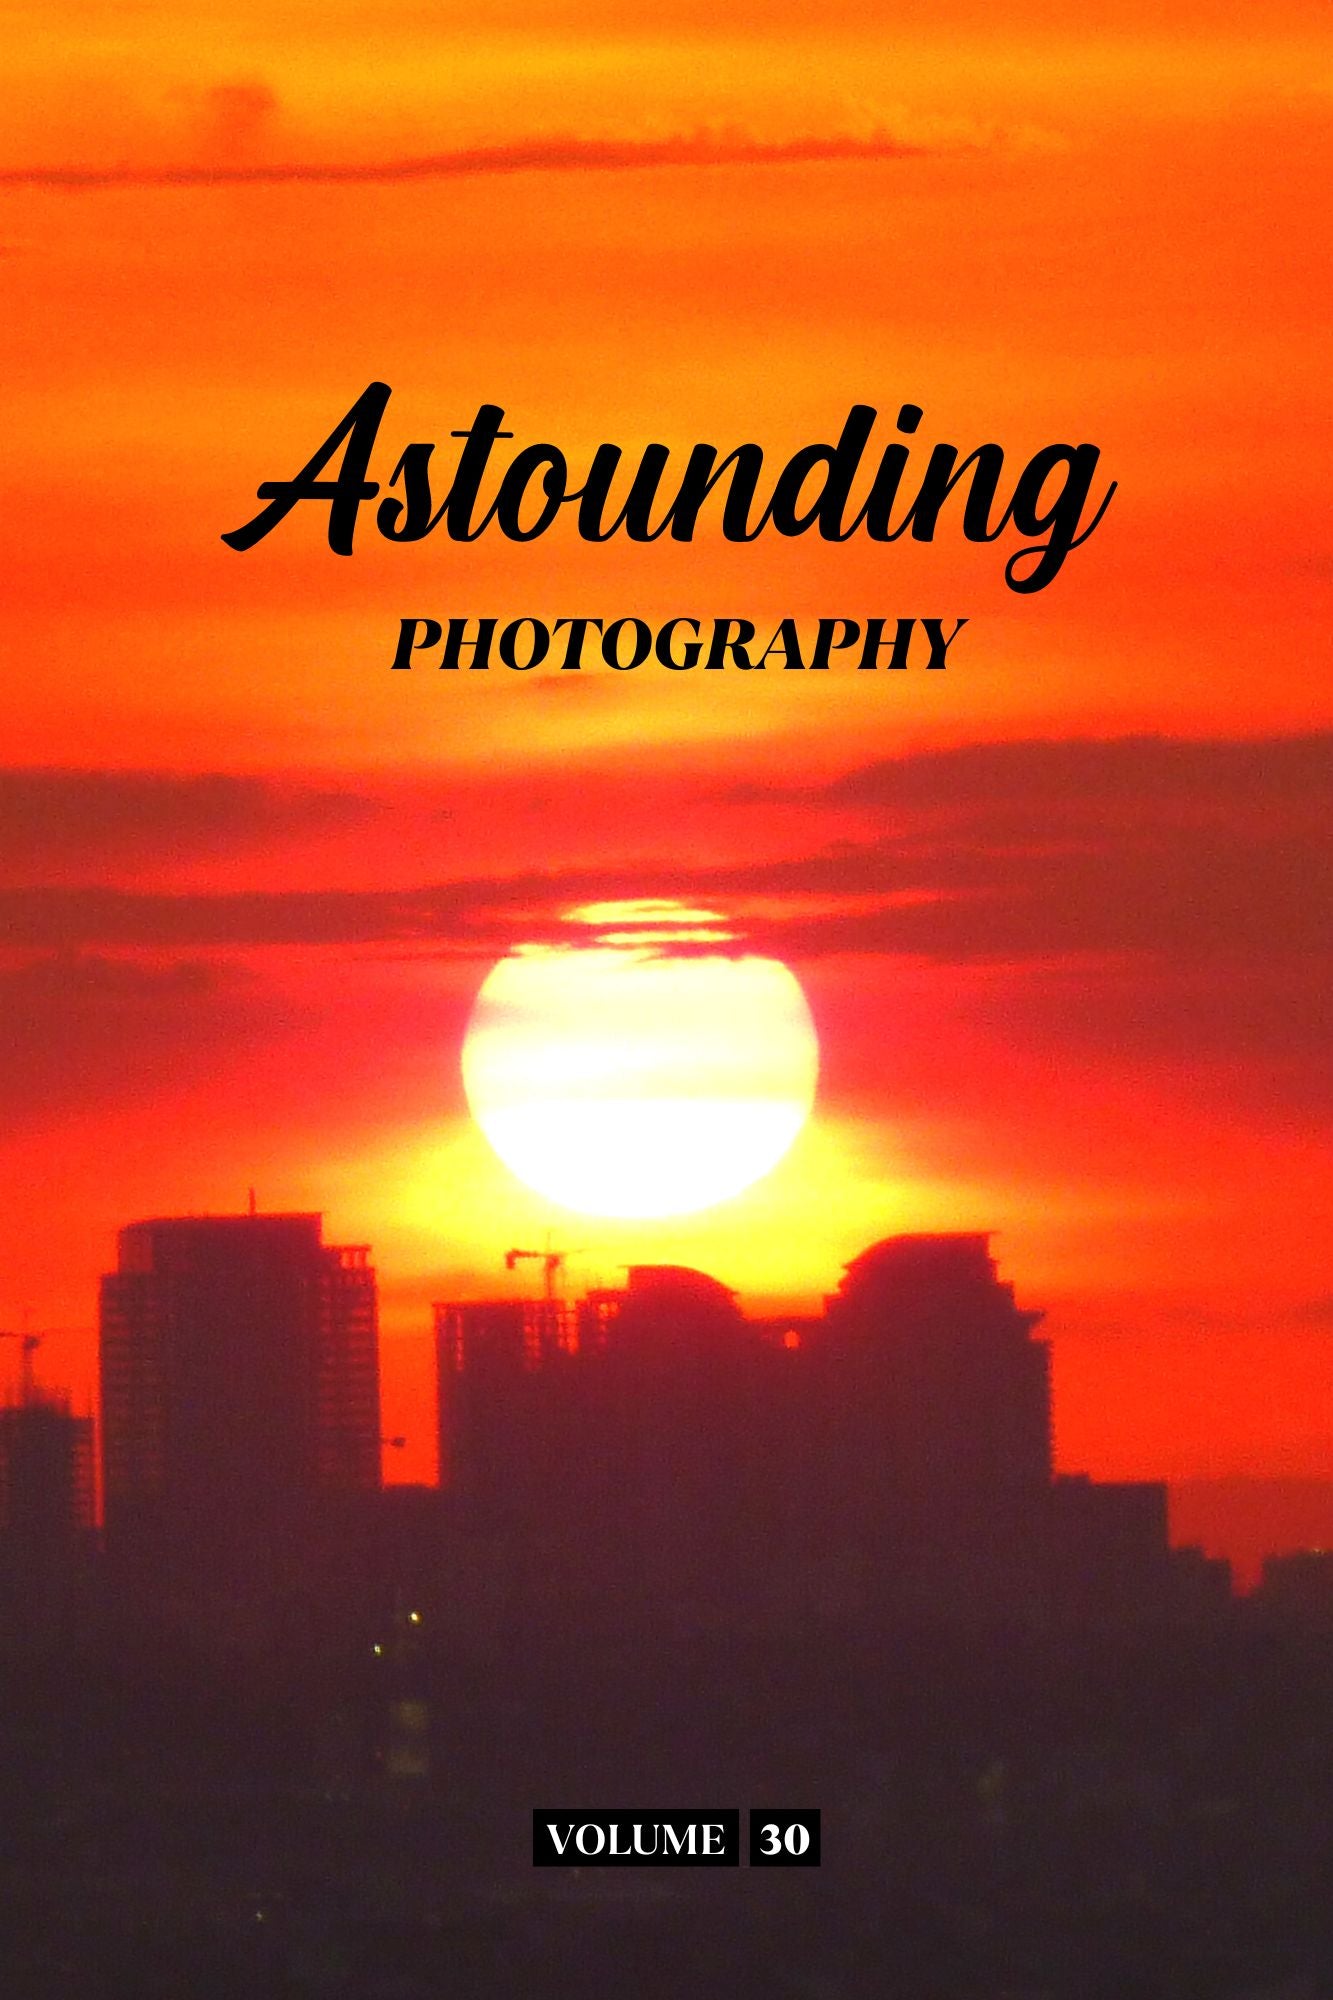 Astounding Photography Volume 30 (Physical Book Pre-Order)